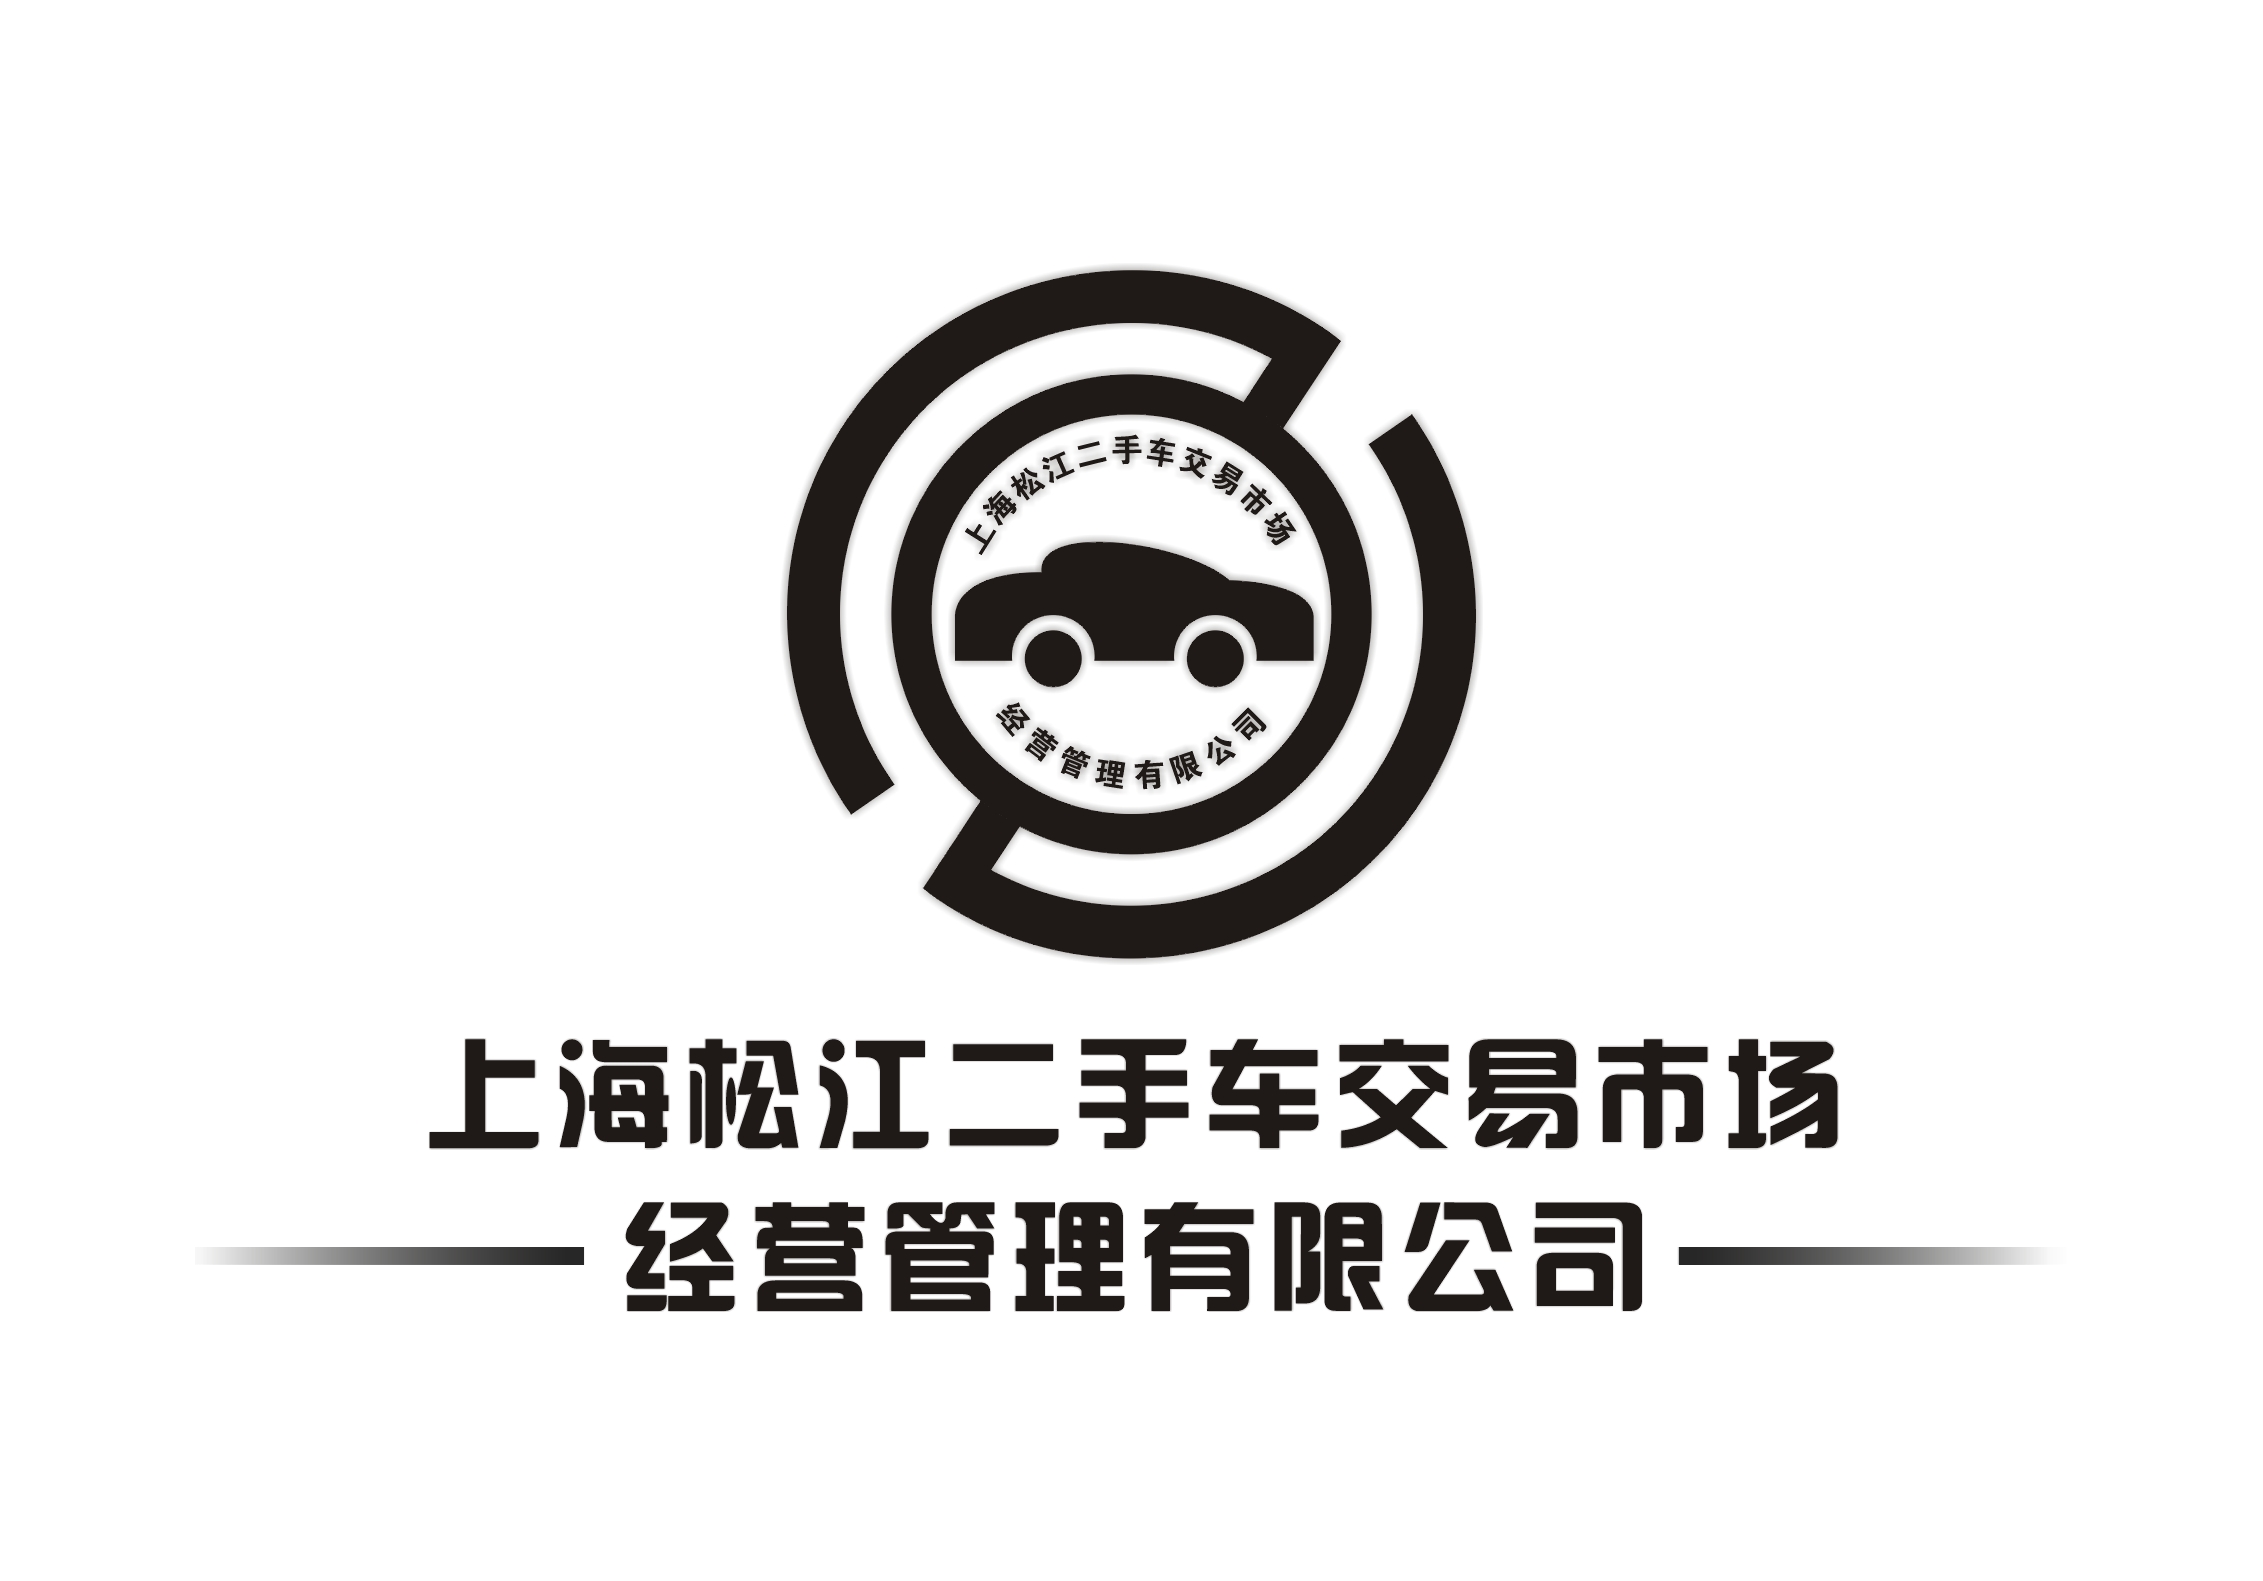 上海松江二手车交易市场经营管理公司logo_60